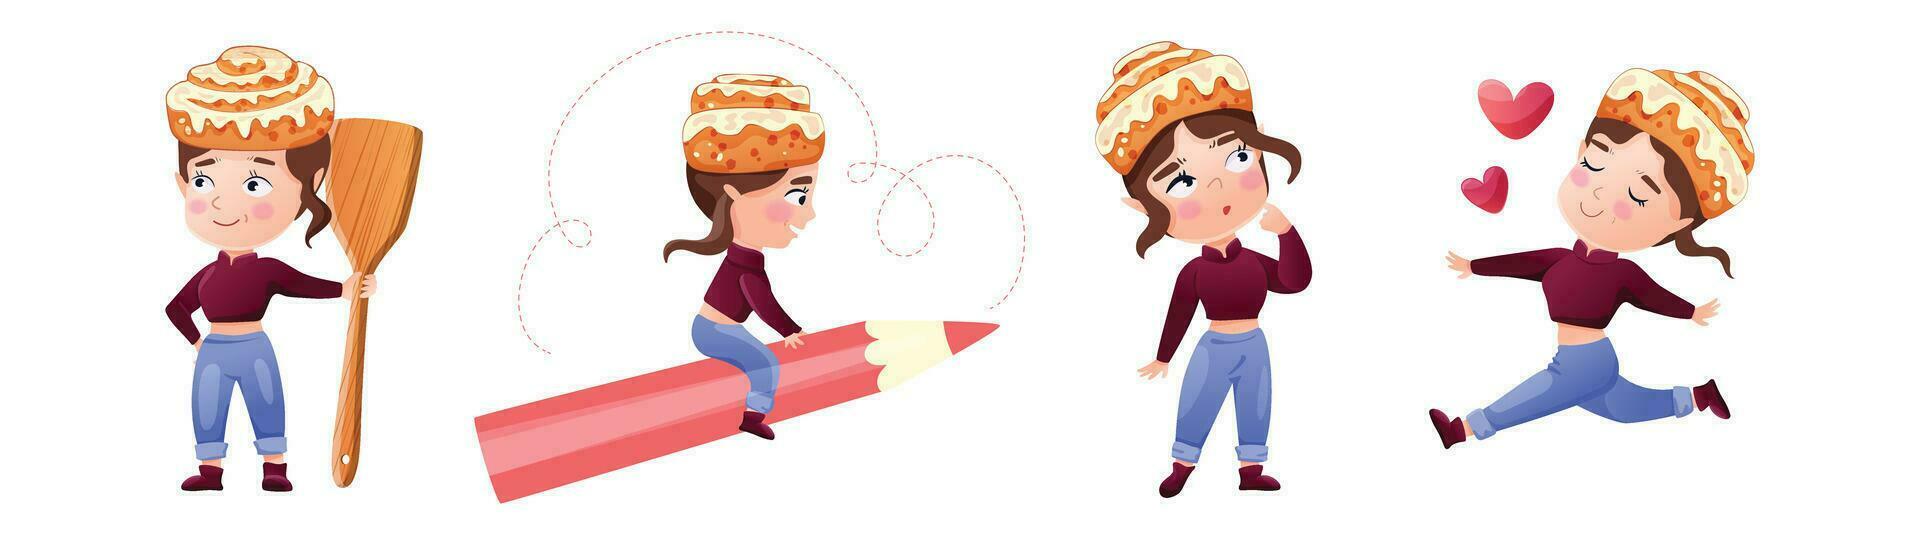 tekens reeks met een kaneel broodje. meisje in verschillend poses met een bun Aan haar hoofd. vector illustratie voor Koken, bakkerij